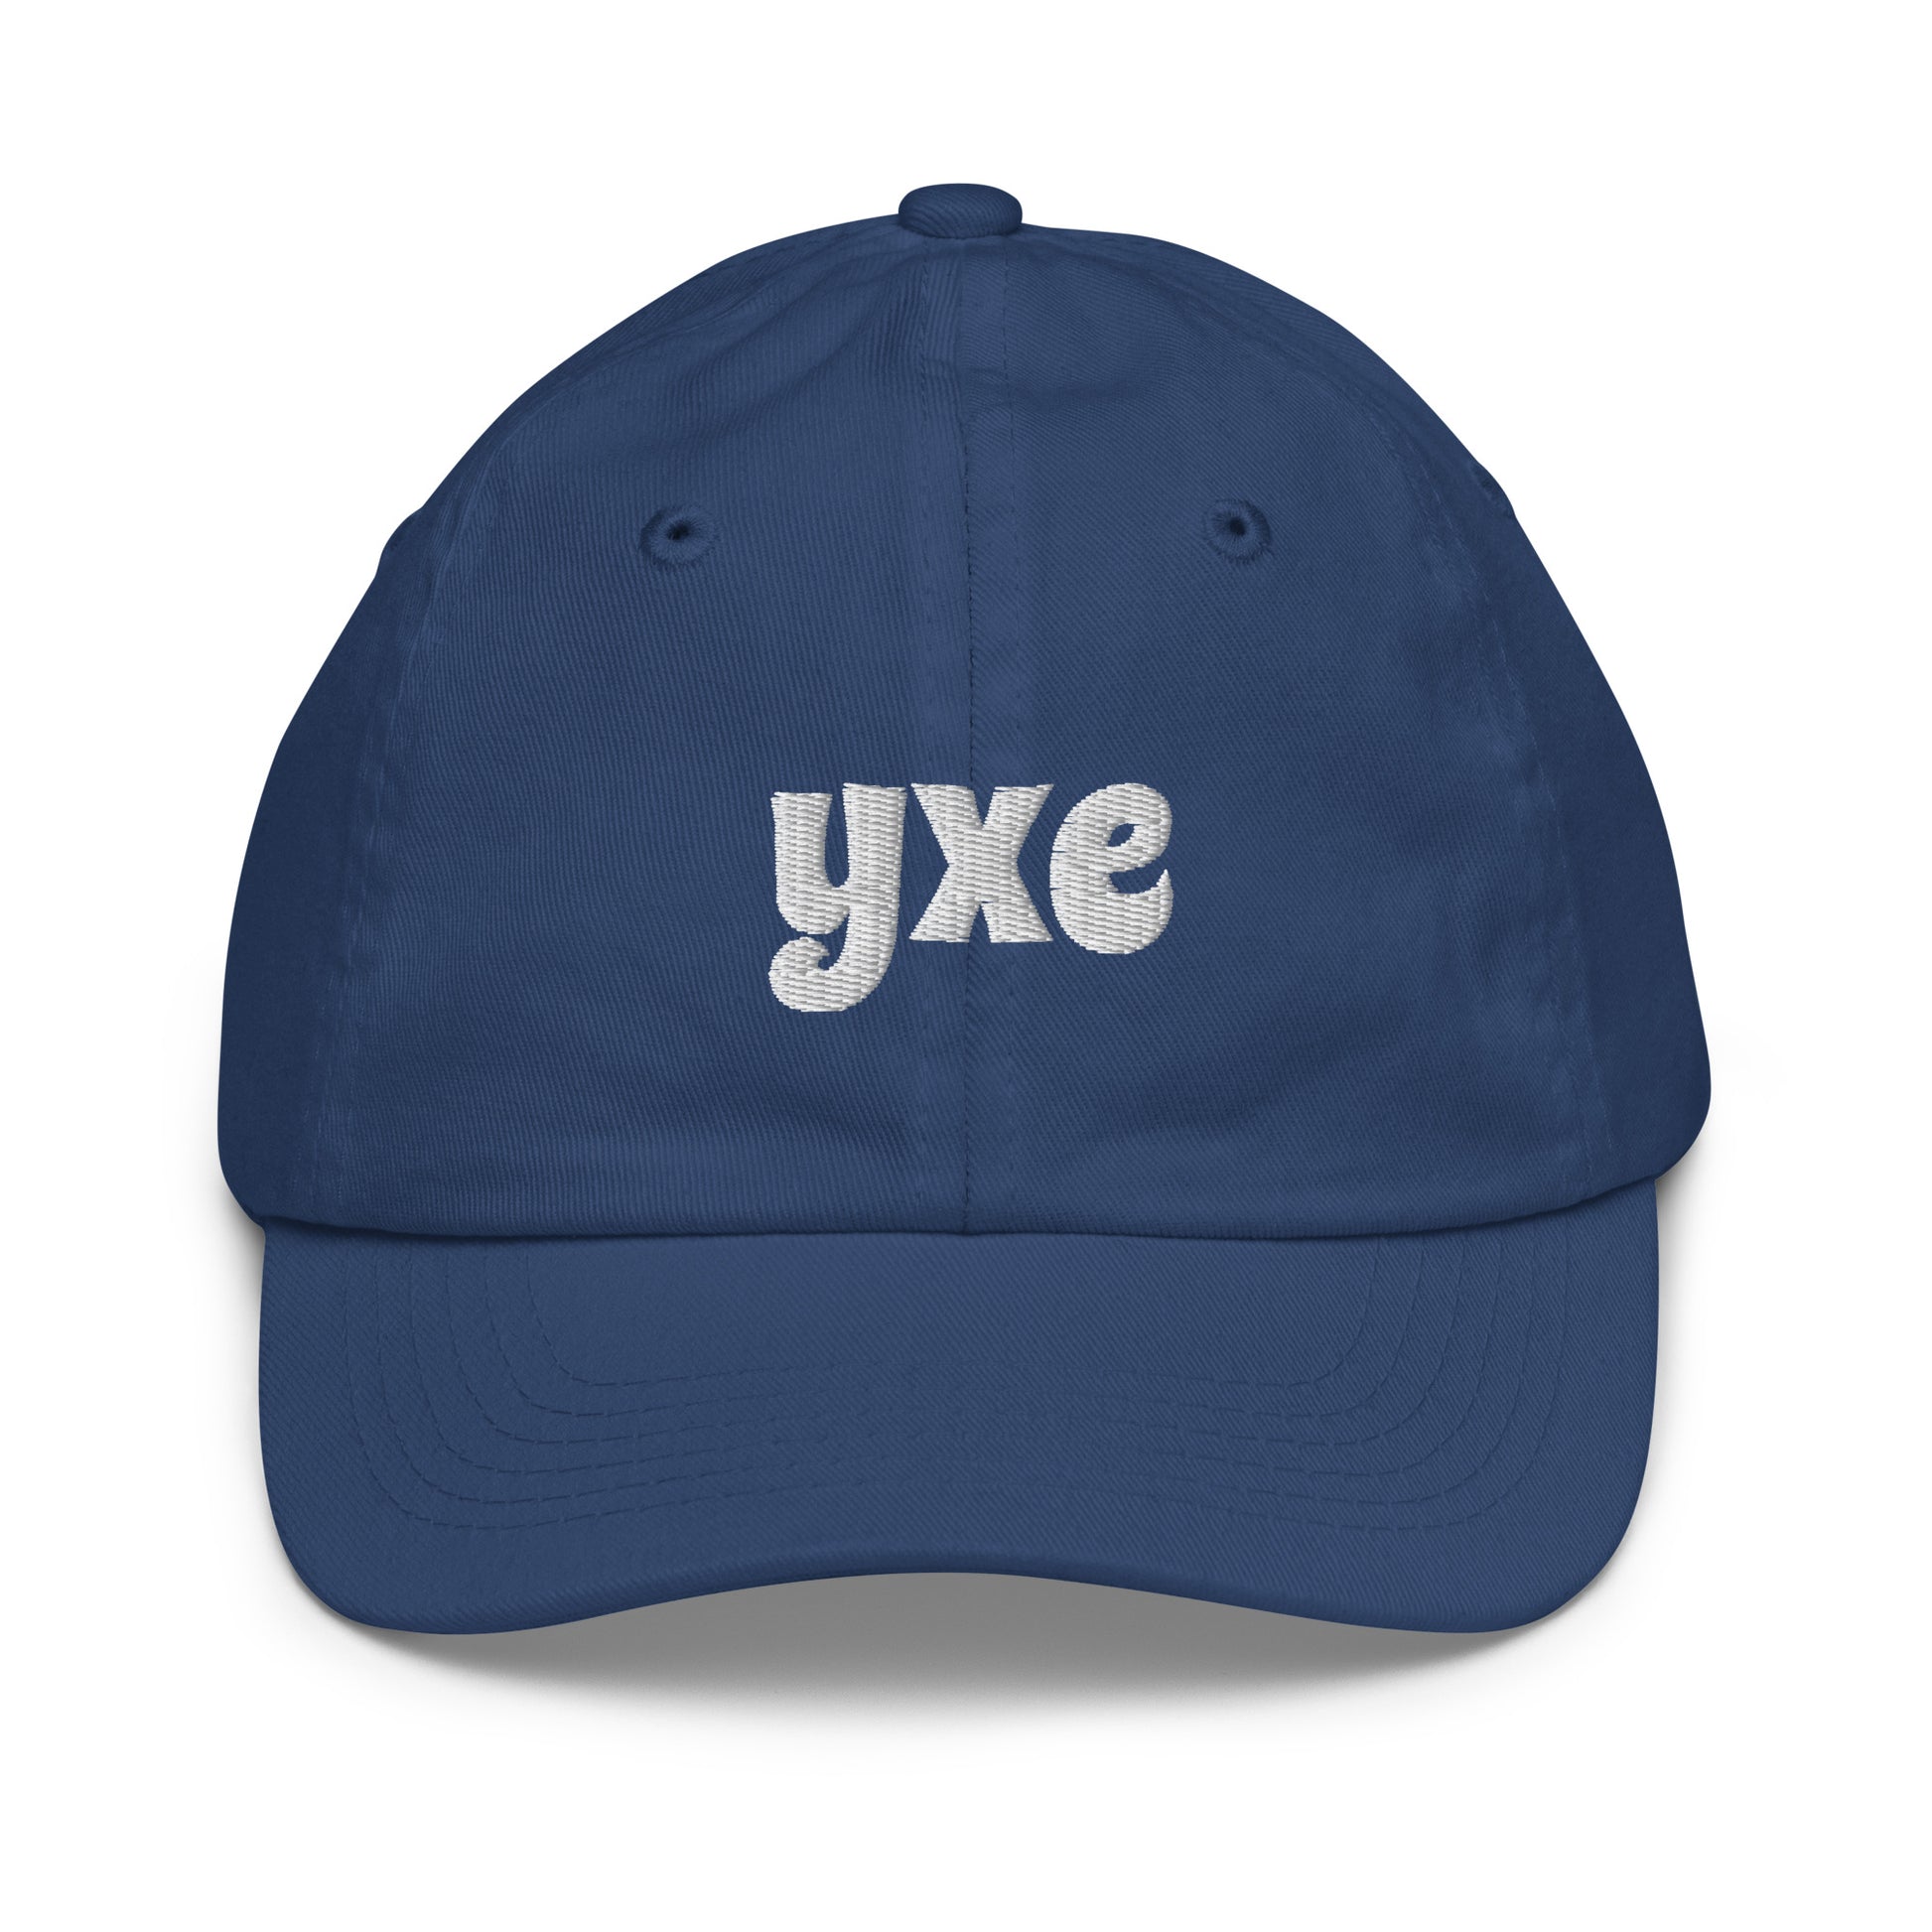 Groovy Kid's Baseball Cap - White • YXE Saskatoon • YHM Designs - Image 15